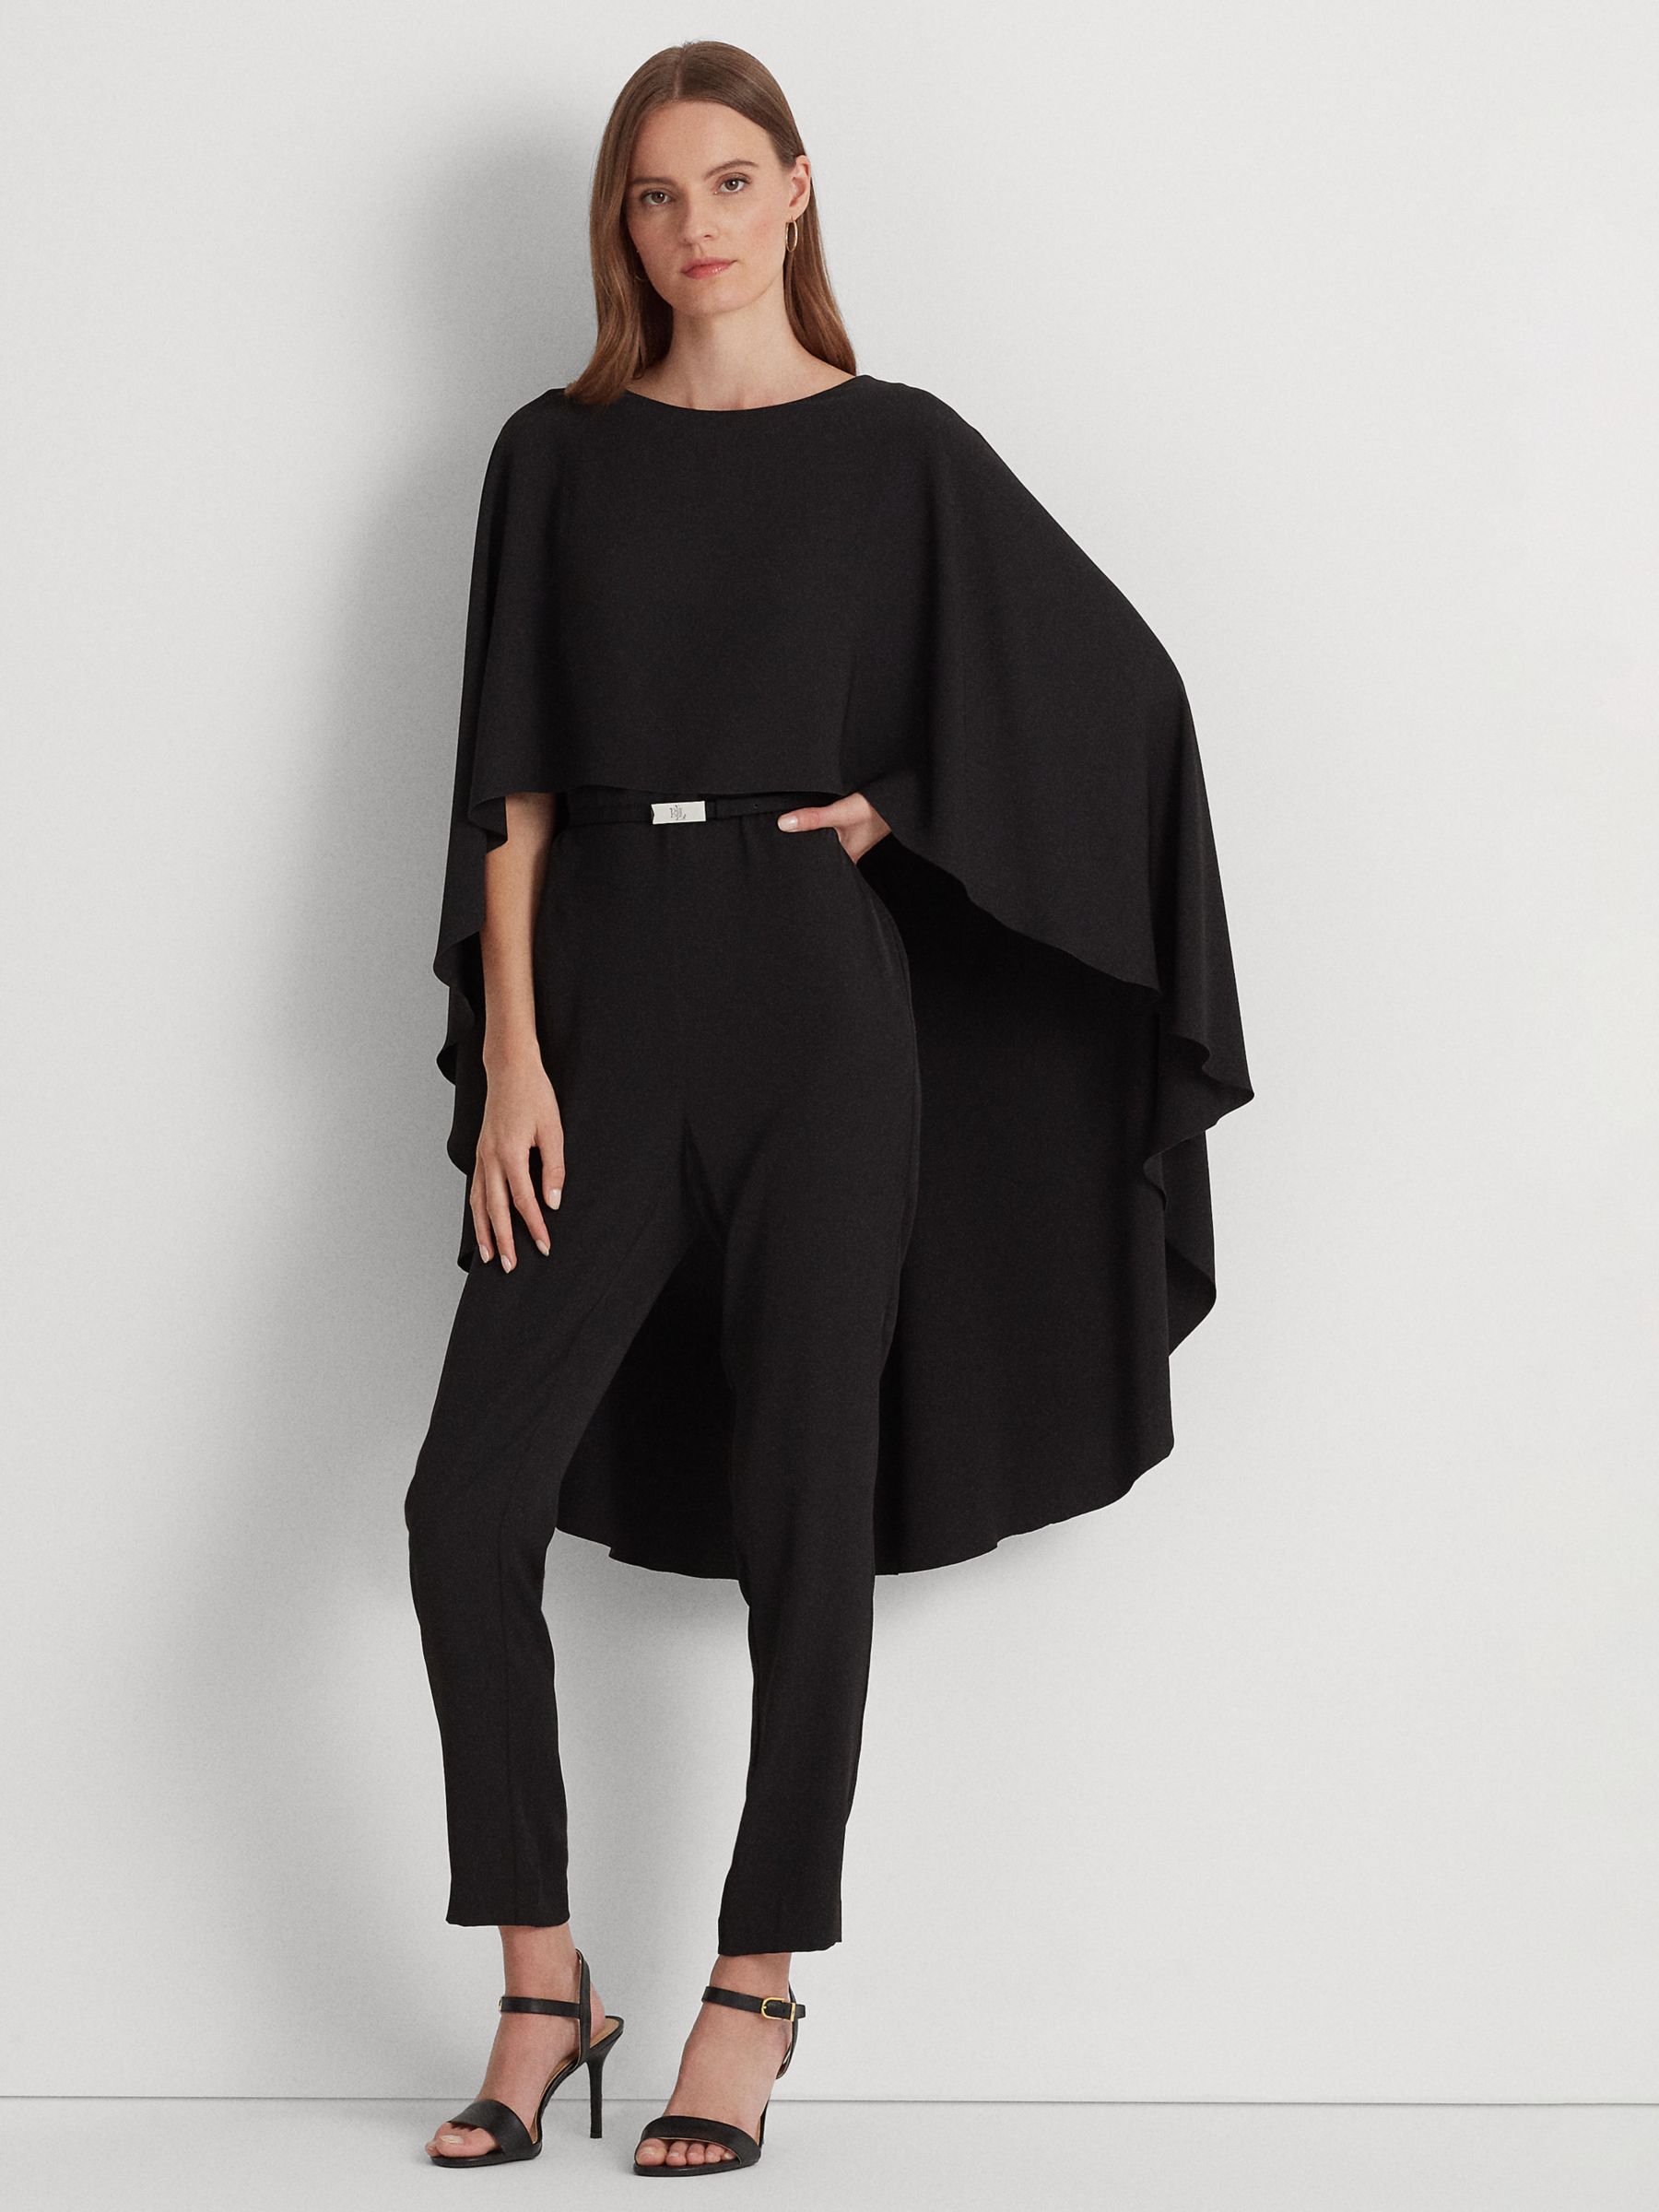 Ralph Lauren Jumpsuit Petite Size 10P Black Short Sleeve Leaf Print